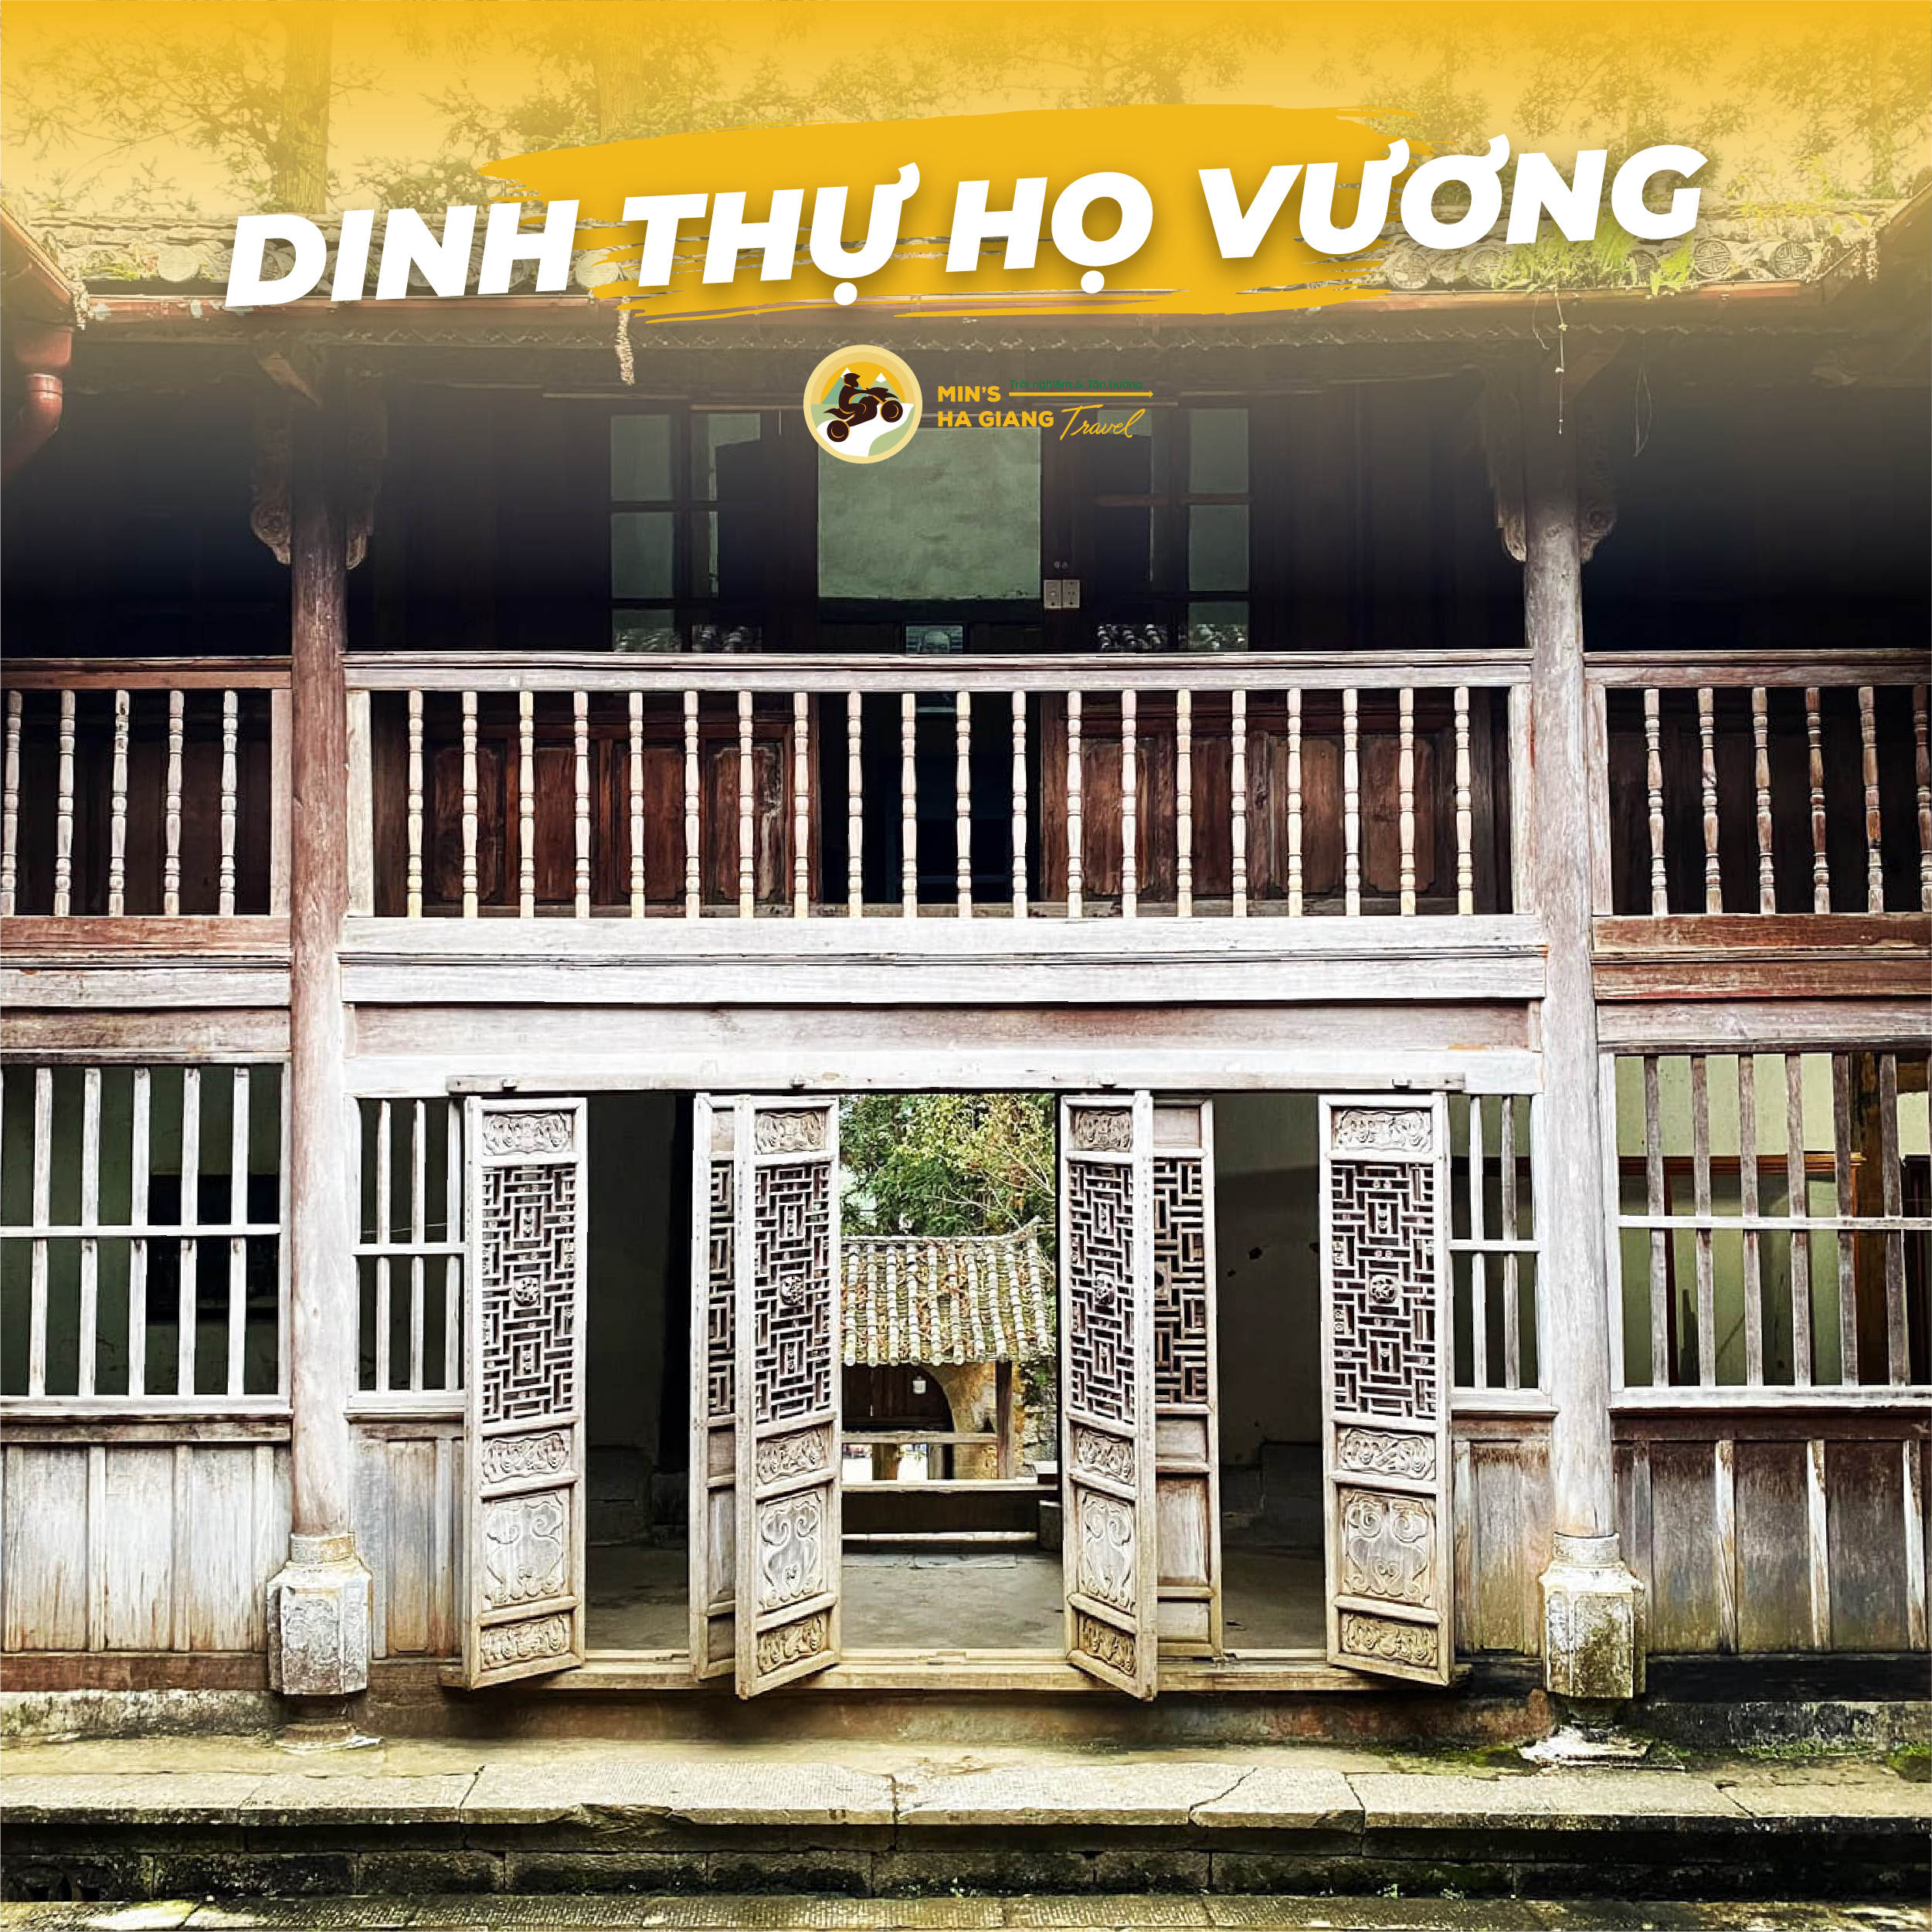 Dinh Thự Họ Vương Hà Giang | Min's Hà Giang Travel